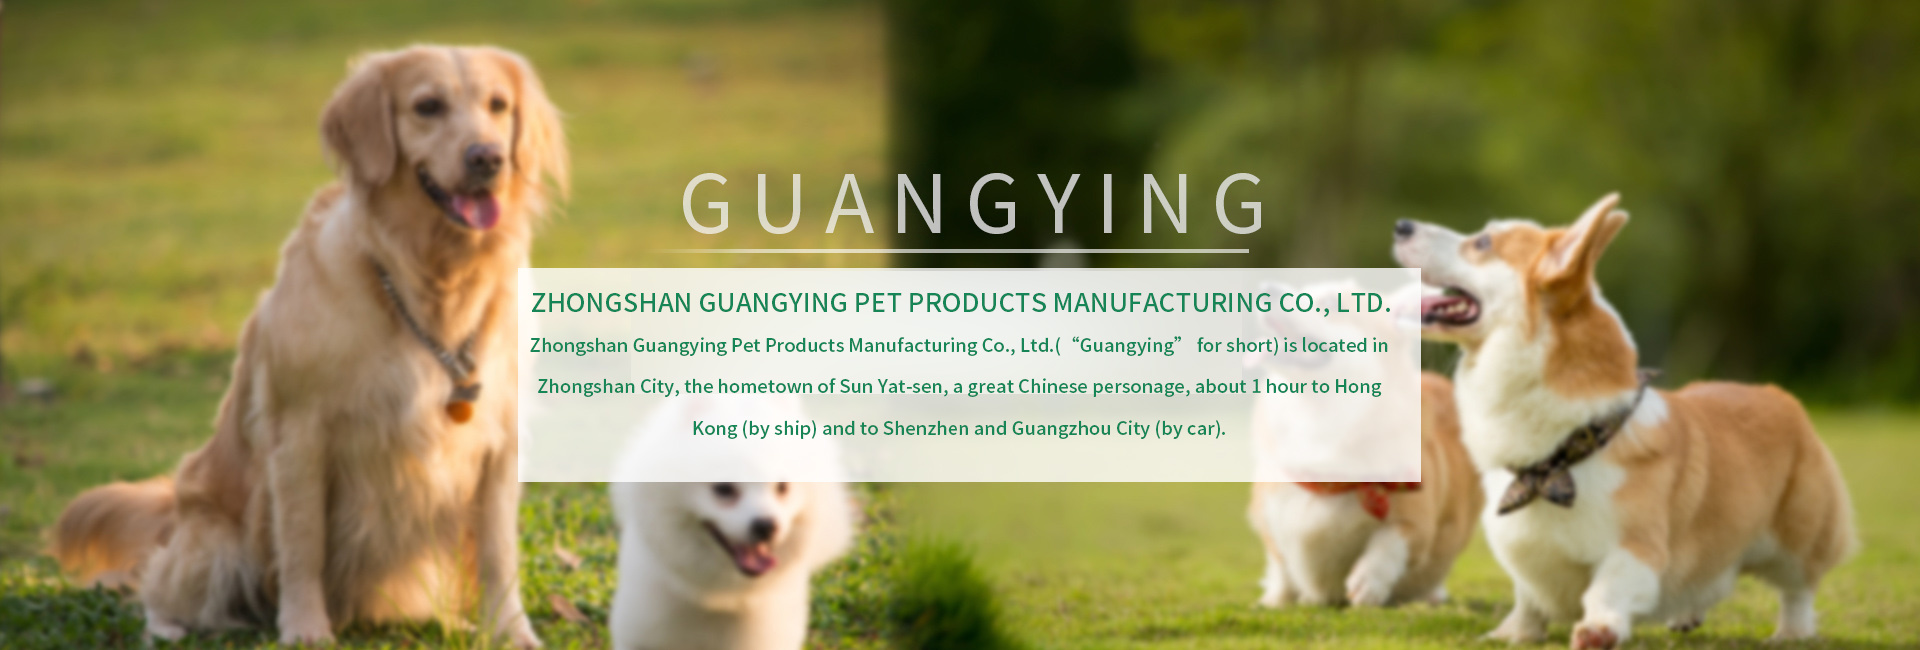 Zhongshan Guangying Pet Products Manufacturing Co., Ltd.